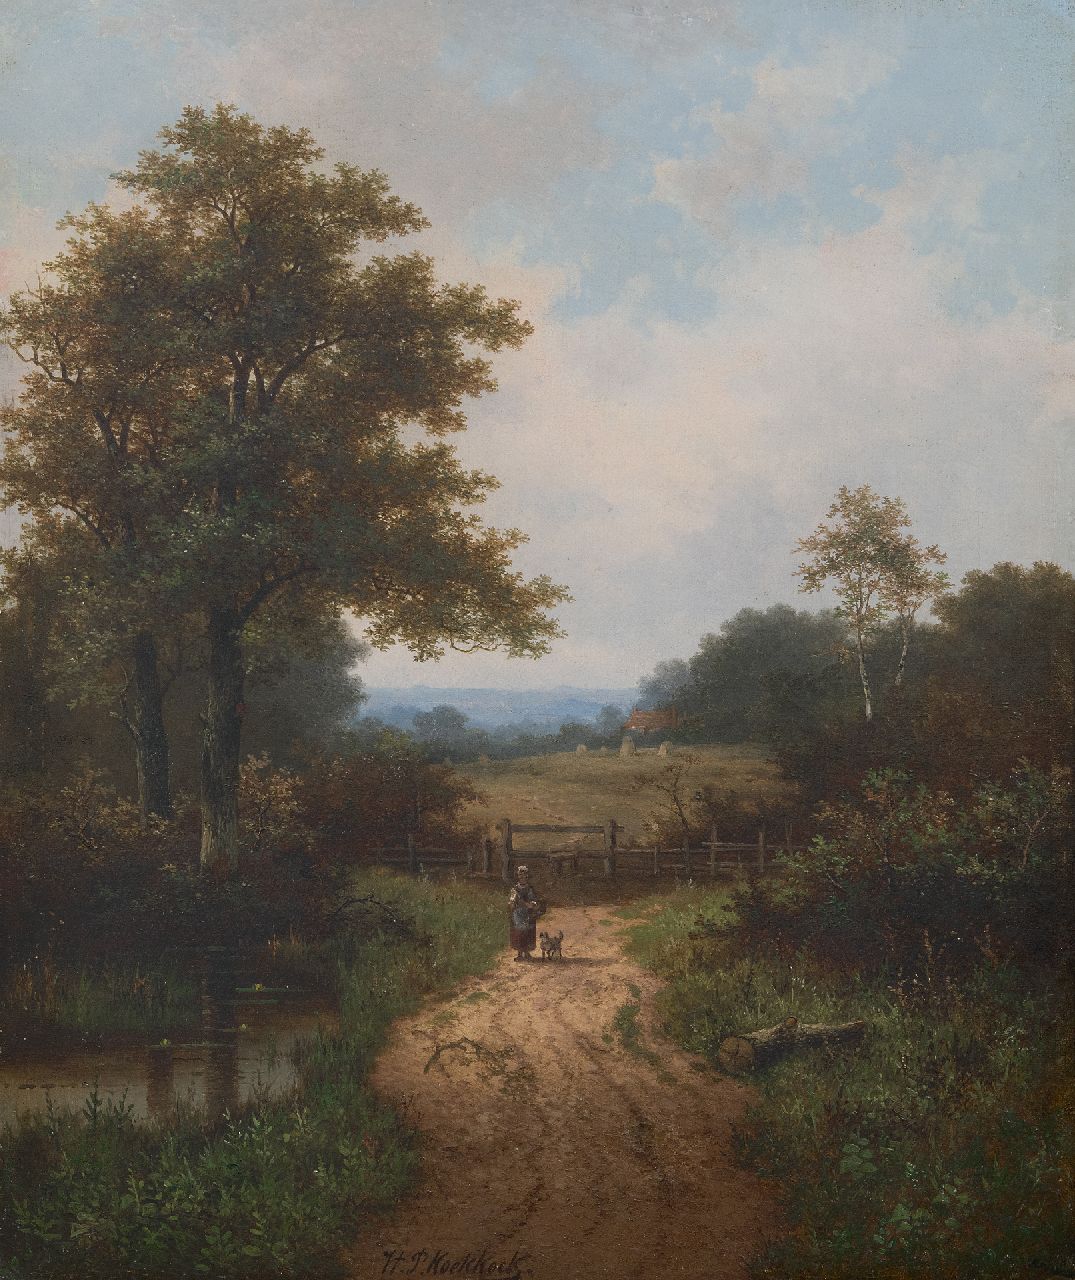 Hendrik Pieter Koekkoek | Boerin en hond op beboste landweg, olieverf op doek, 61,0 x 50,7 cm, gesigneerd m.o.